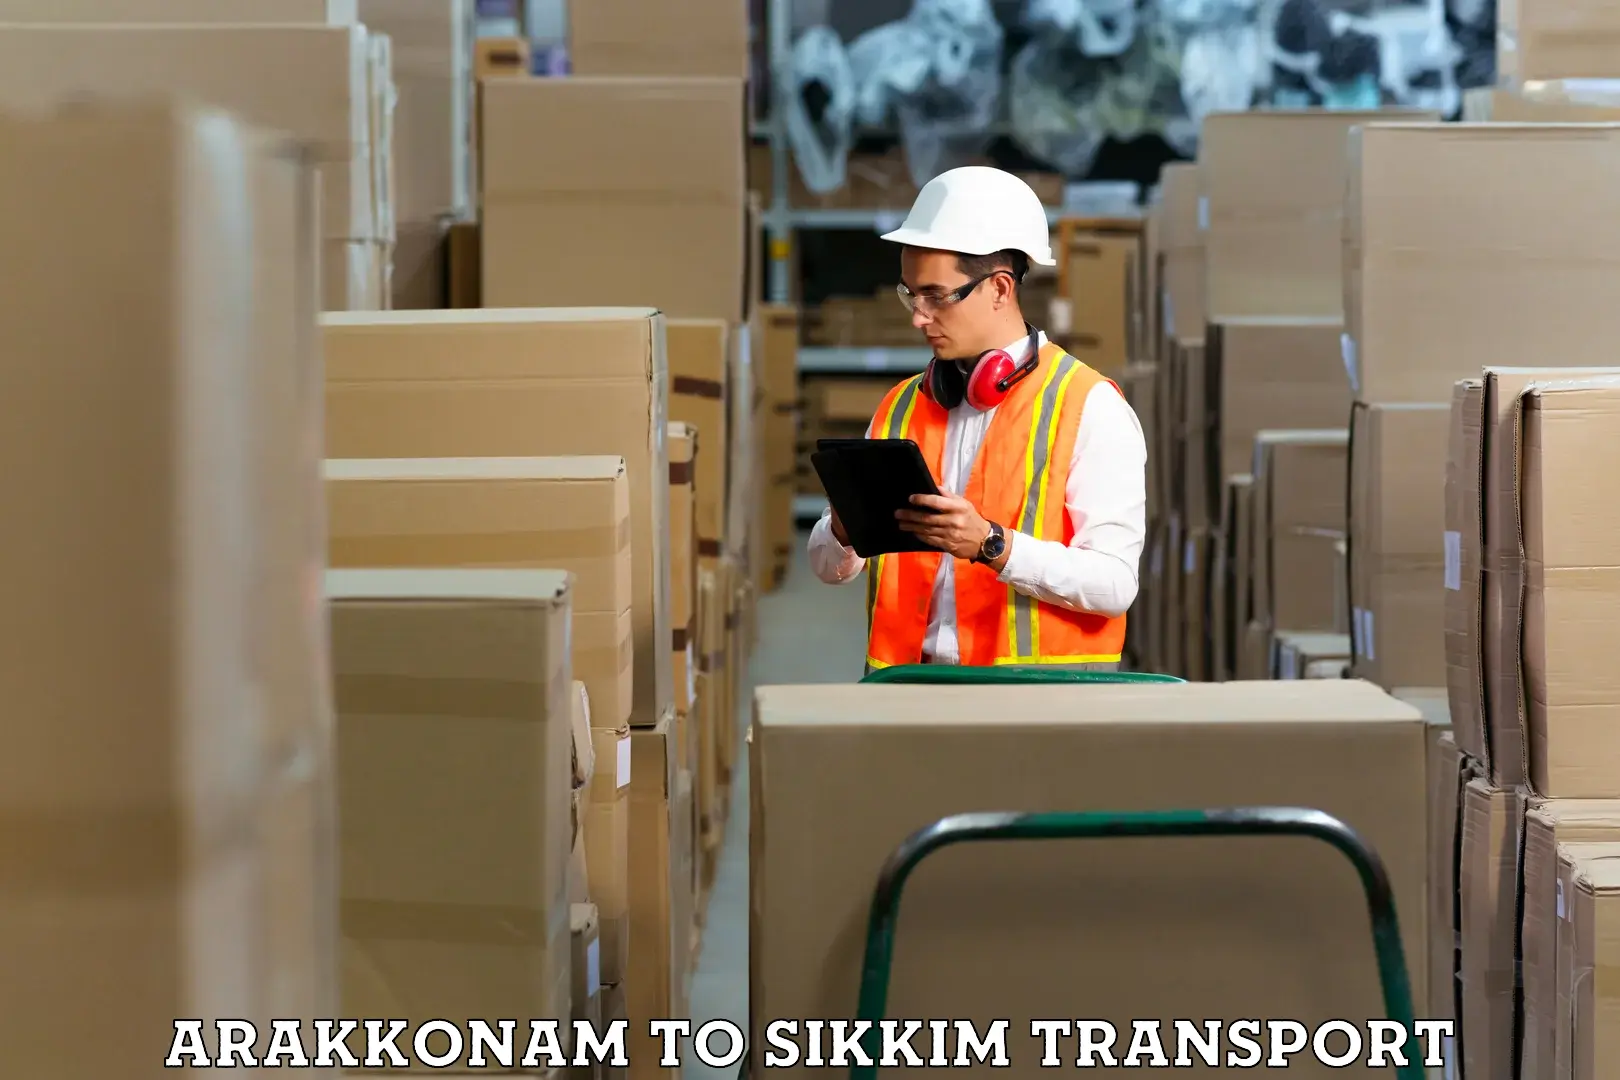 Pick up transport service Arakkonam to Sikkim